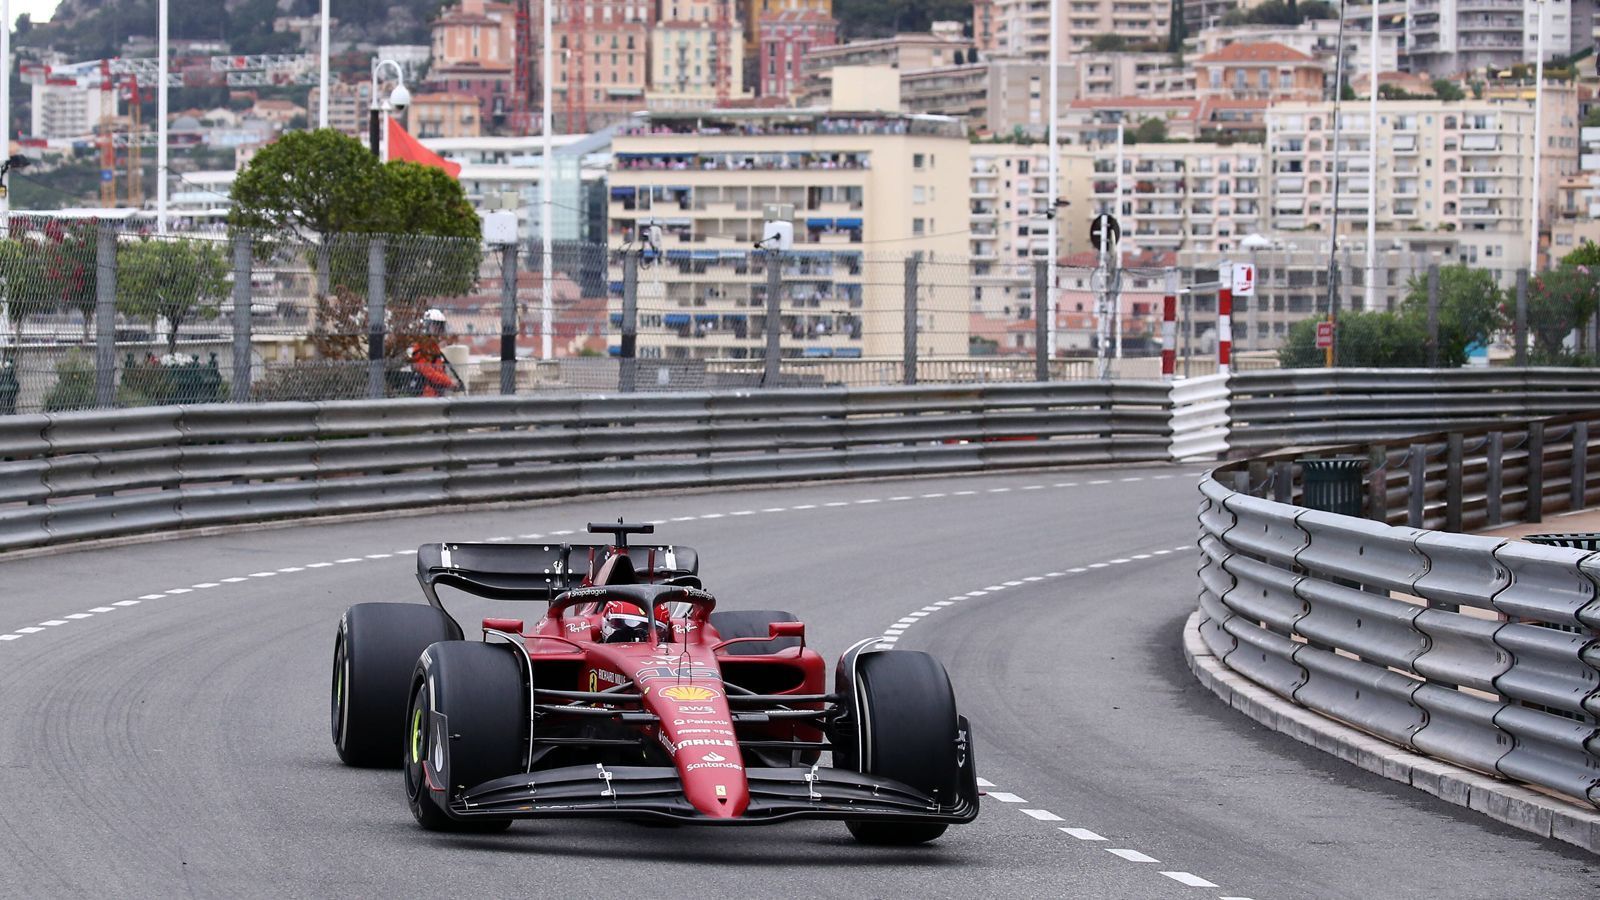 
                <strong>Platz 21: Monaco</strong><br>
                &#x2022; Strecke: Monte Carlo<br>&#x2022; Ausrichtungsgebühr: 20 Millionen Dollar (10 Millionen Dollar Renngebühr plus Tourismus-Steuer)<br>&#x2022; Vertragslaufzeit bis: 2025<br>
              